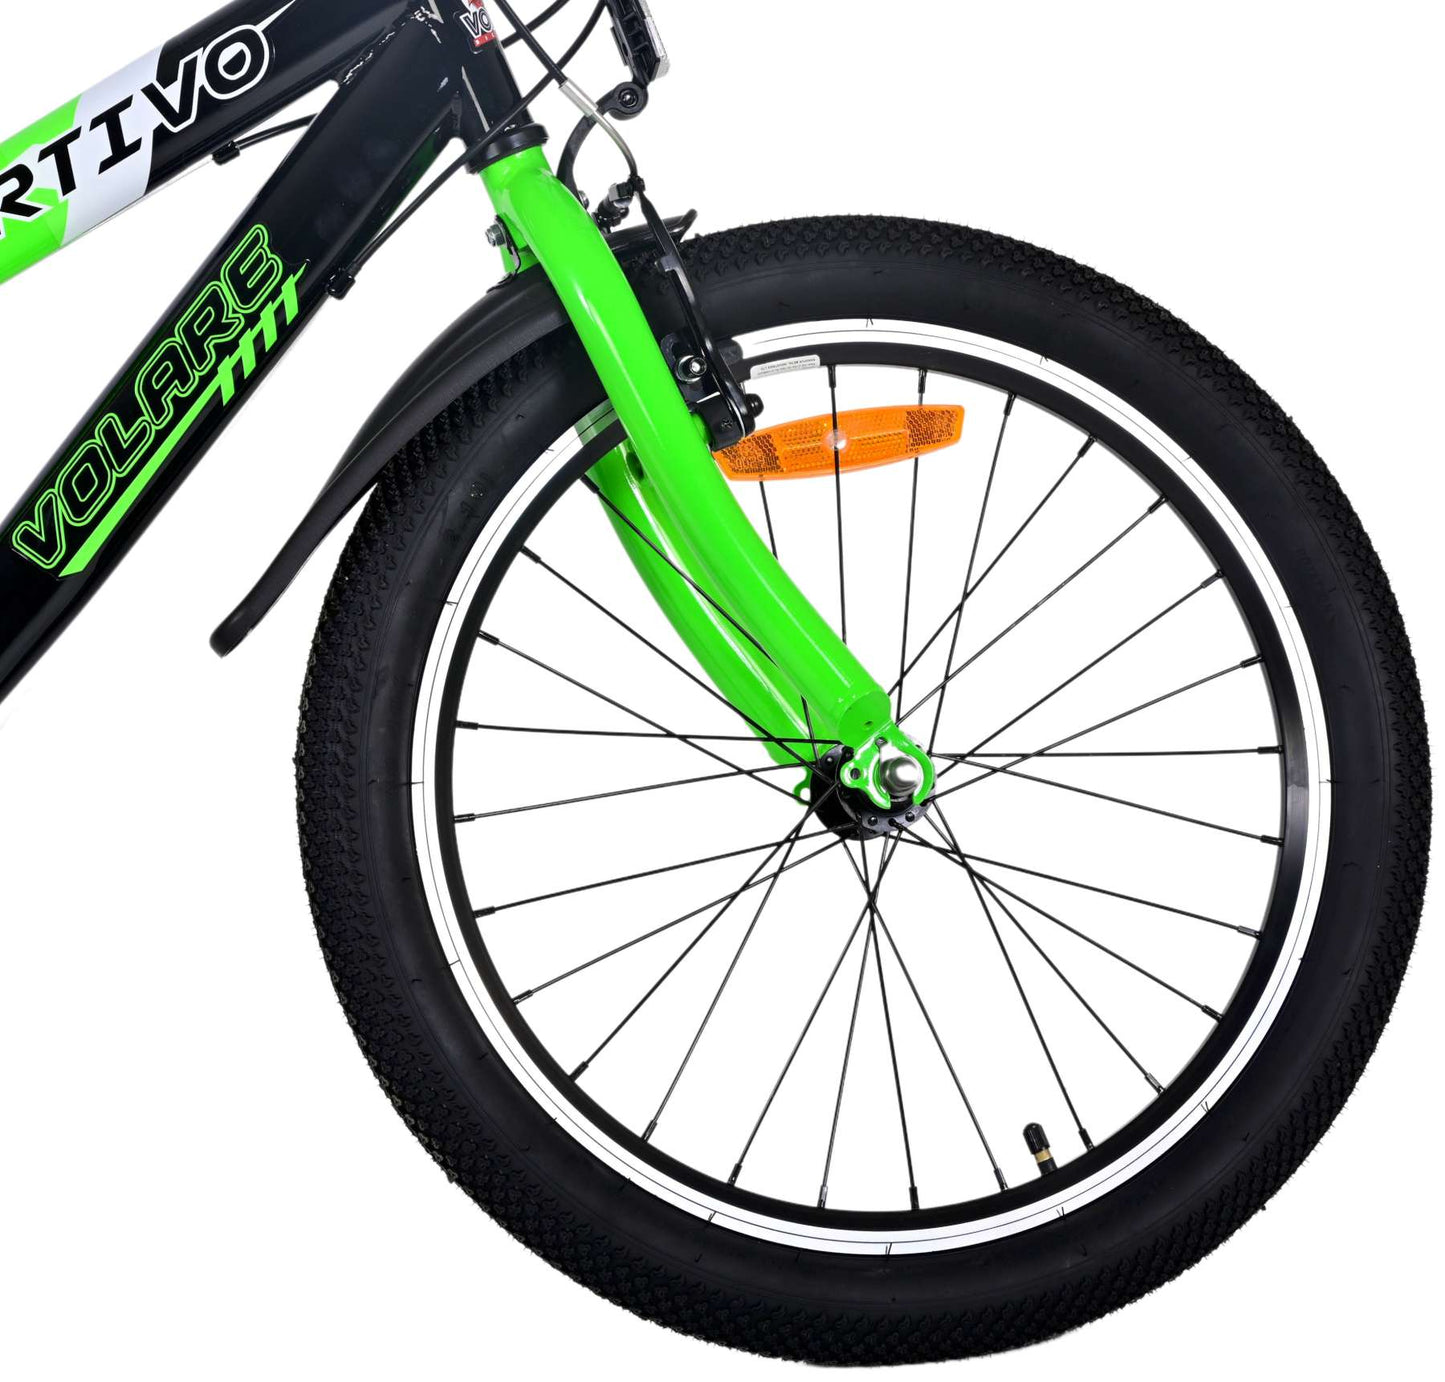 Bicicleta para niños Volare Sportivo - Niños - 20 pulgadas - Verde - 7 engranajes